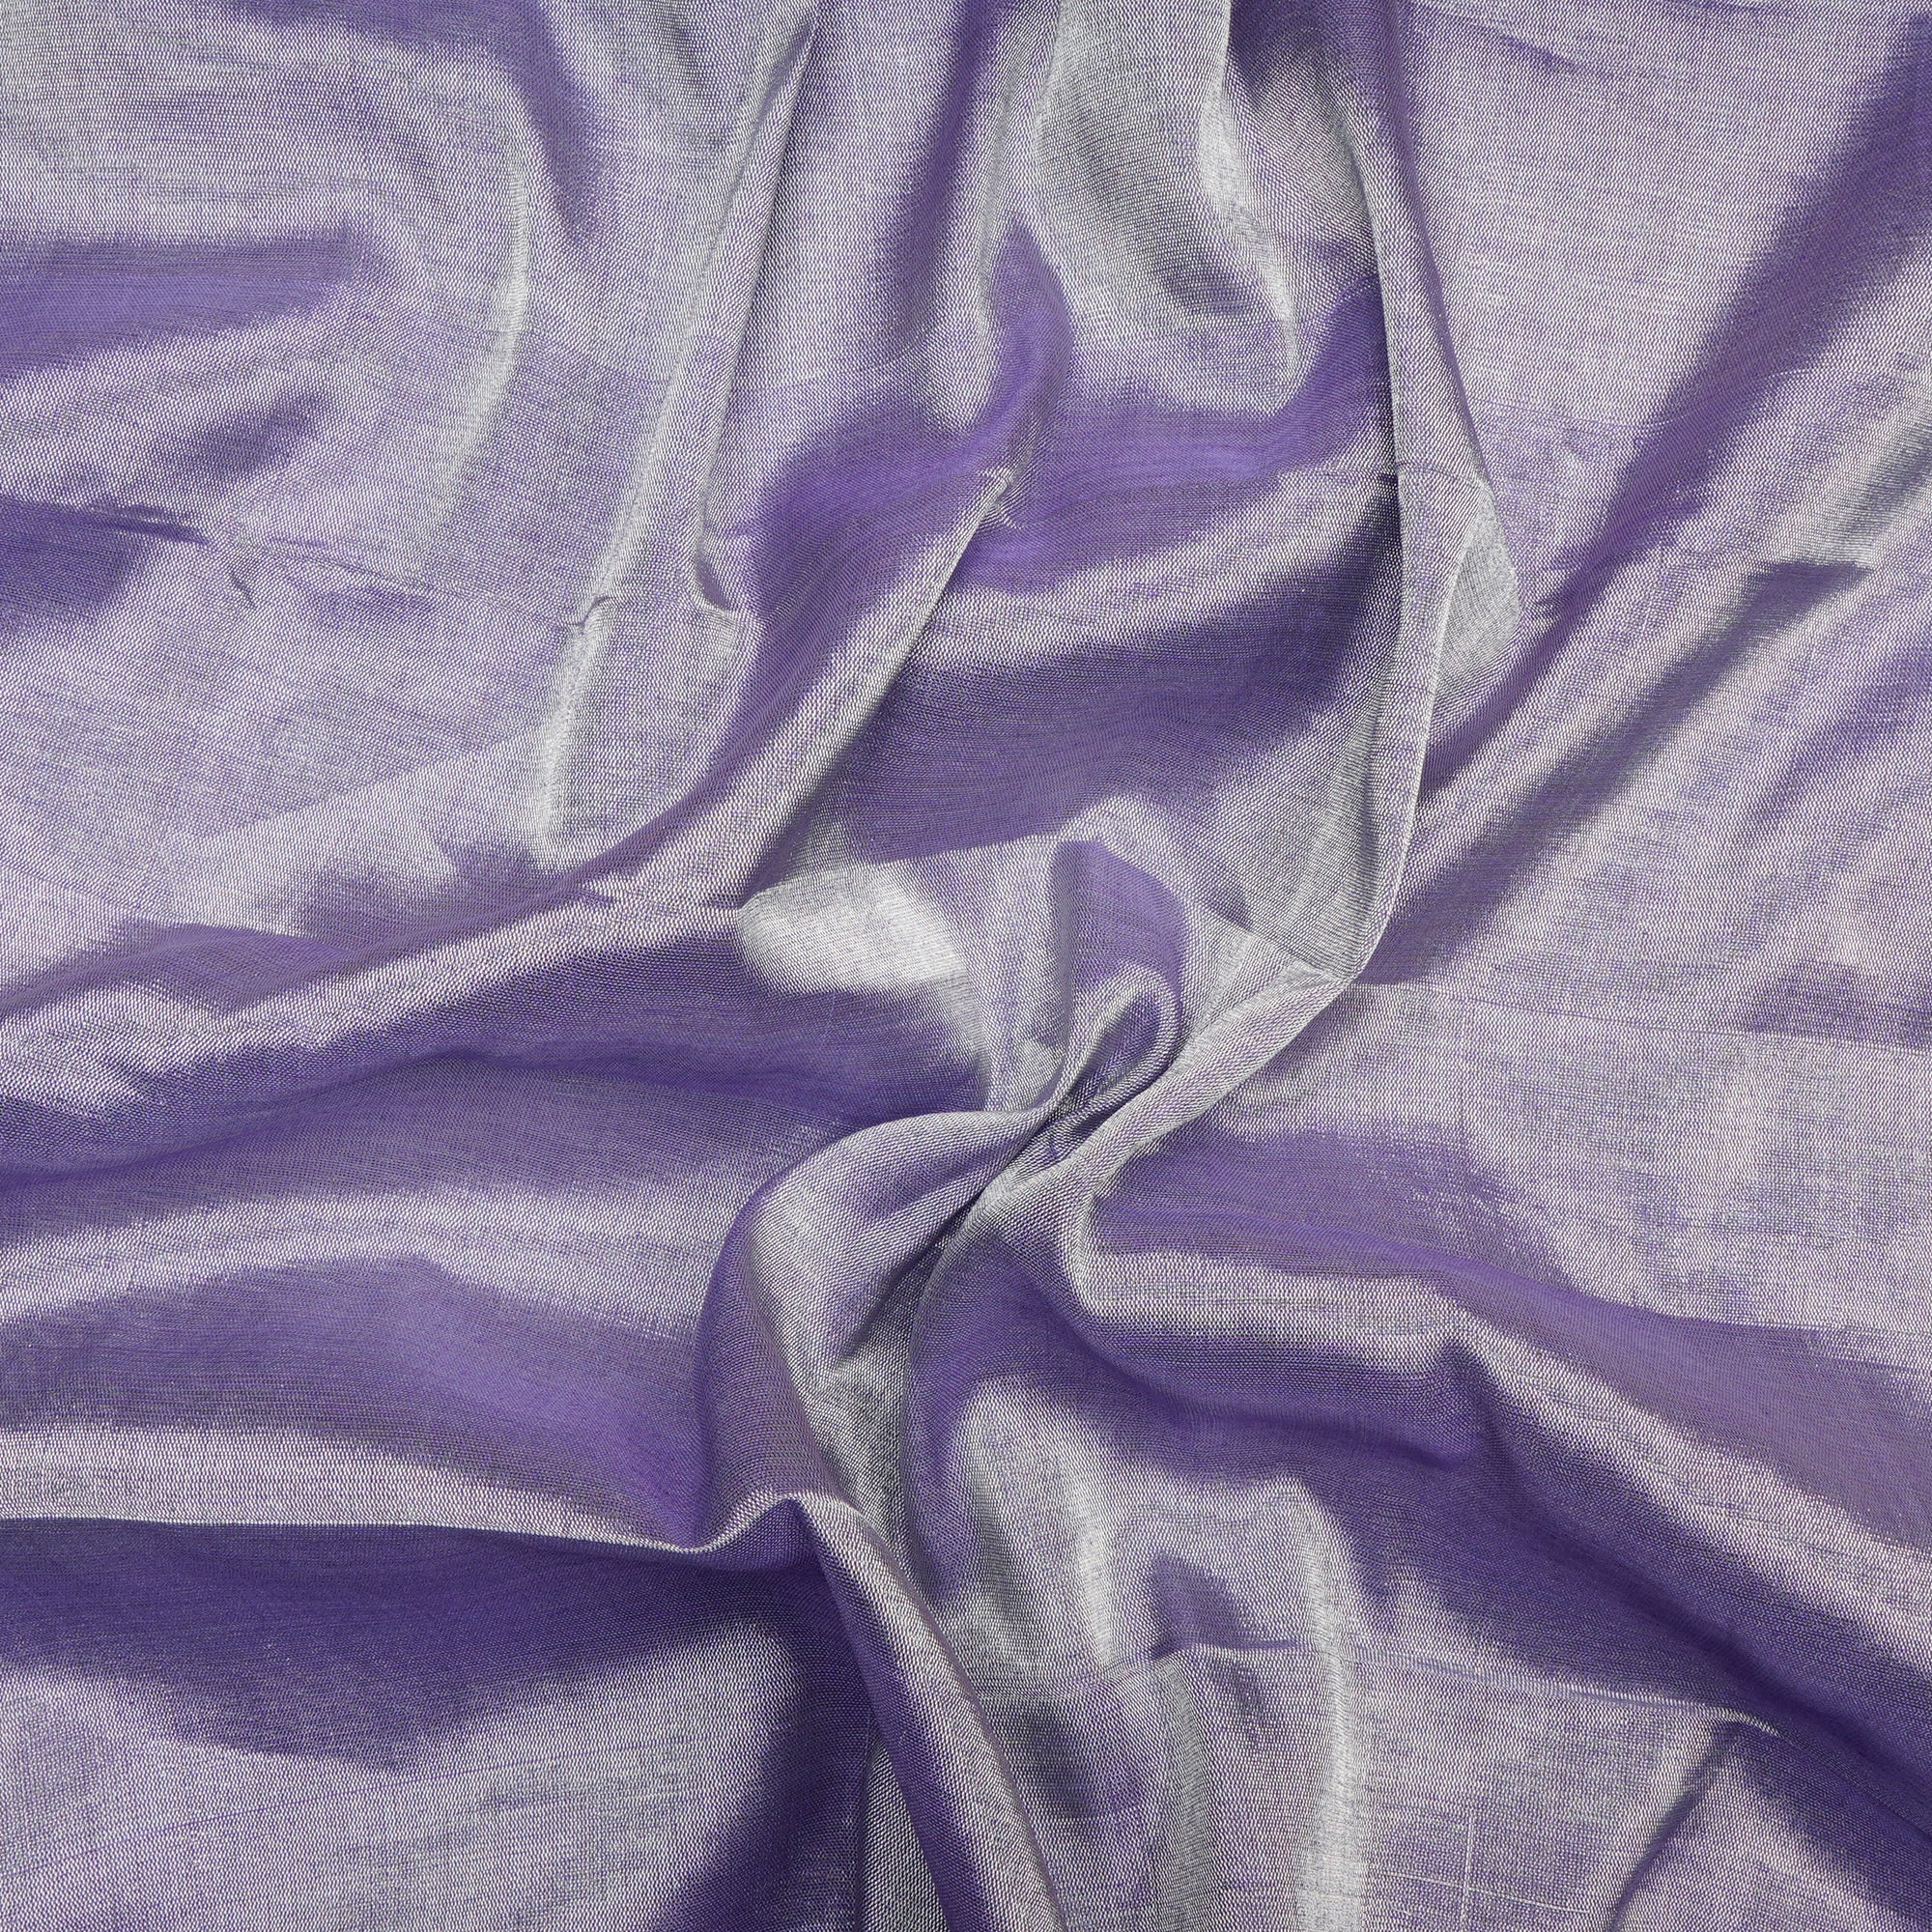 Metallic Purple Color Handwoven Pure Tissue Fabric